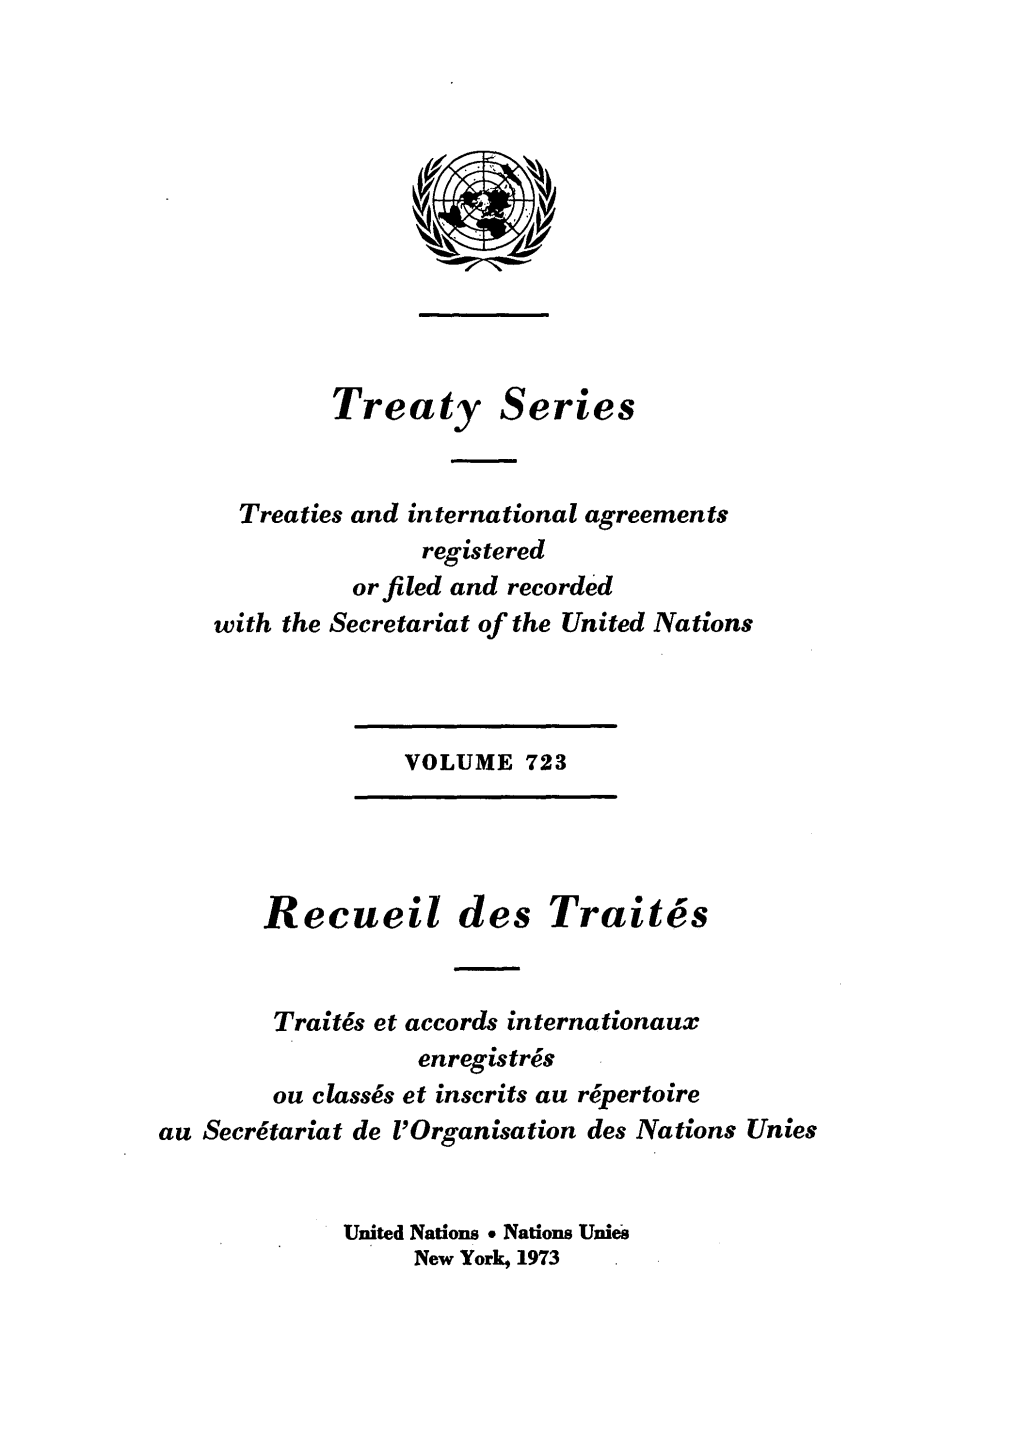 Treaty Series Recueil Des Traites